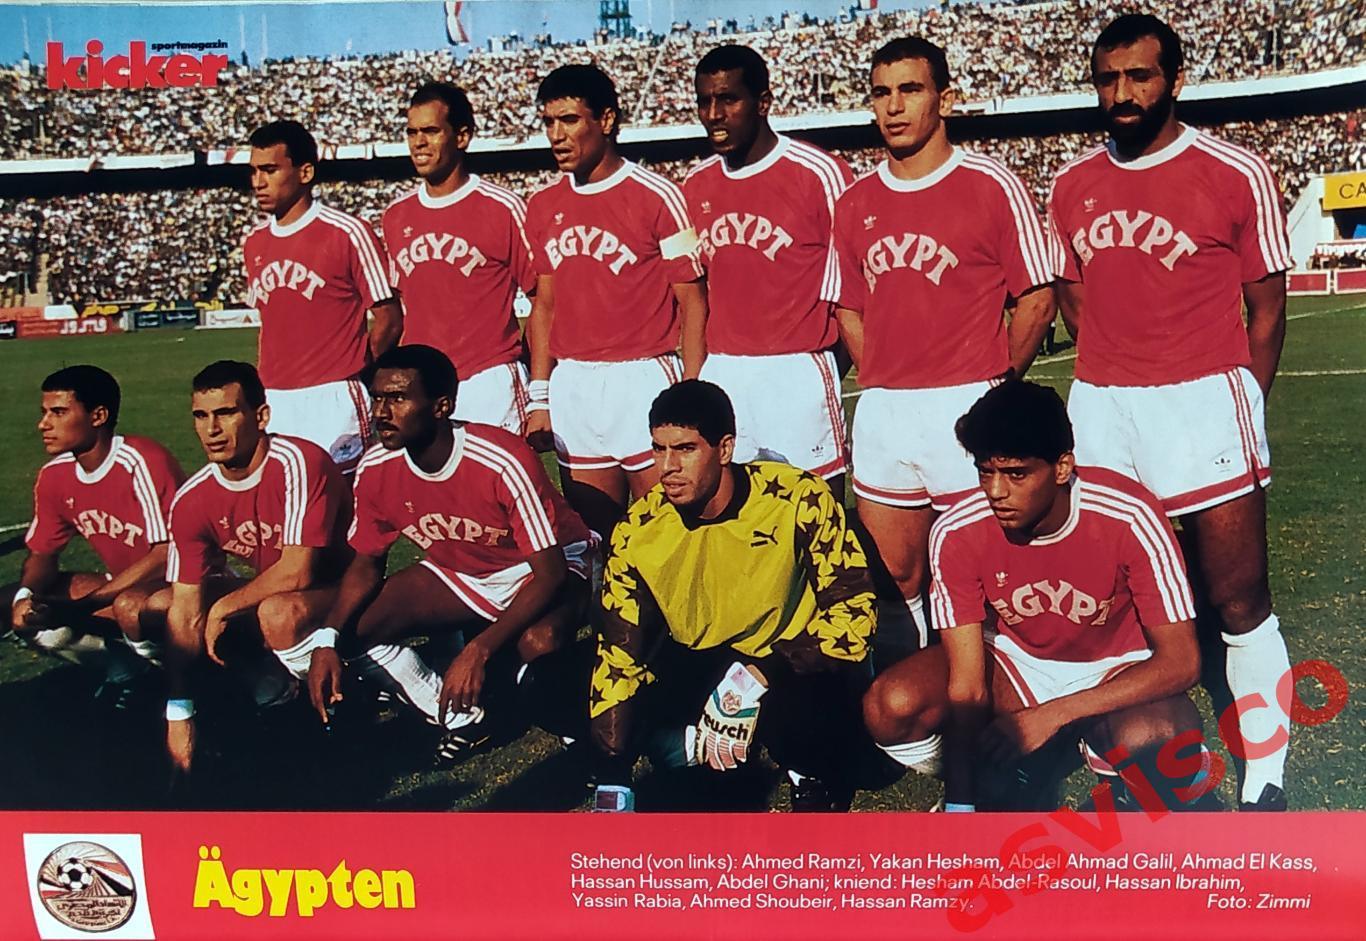 Чемпионат Мира по футболу в Италии 1990 года. Группа F. Представление команд. 4